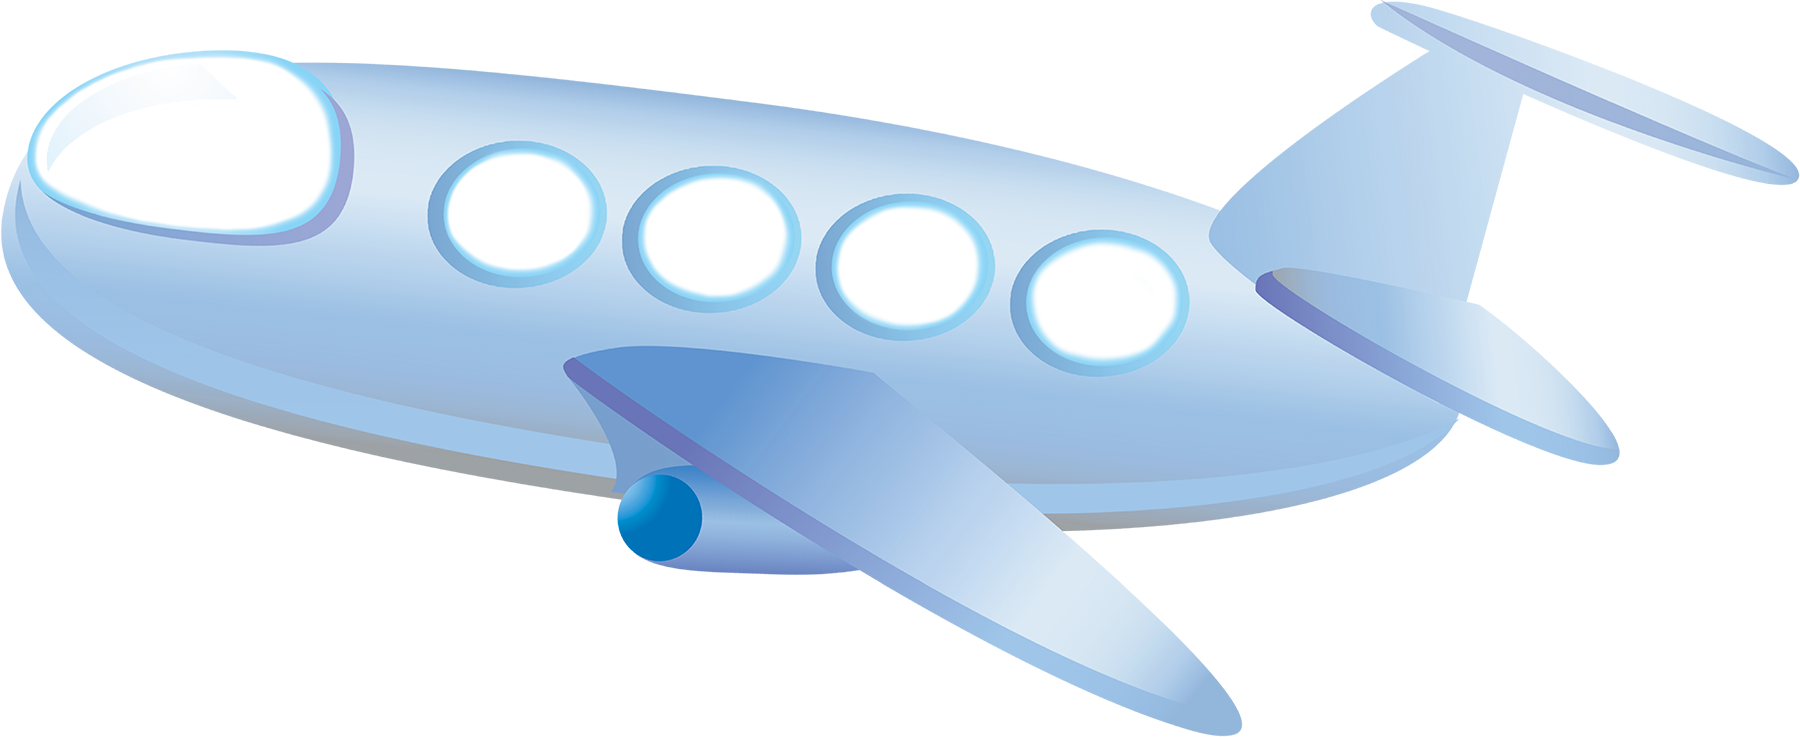 Aeroplano de dibujos animados PNG imagen Transparente